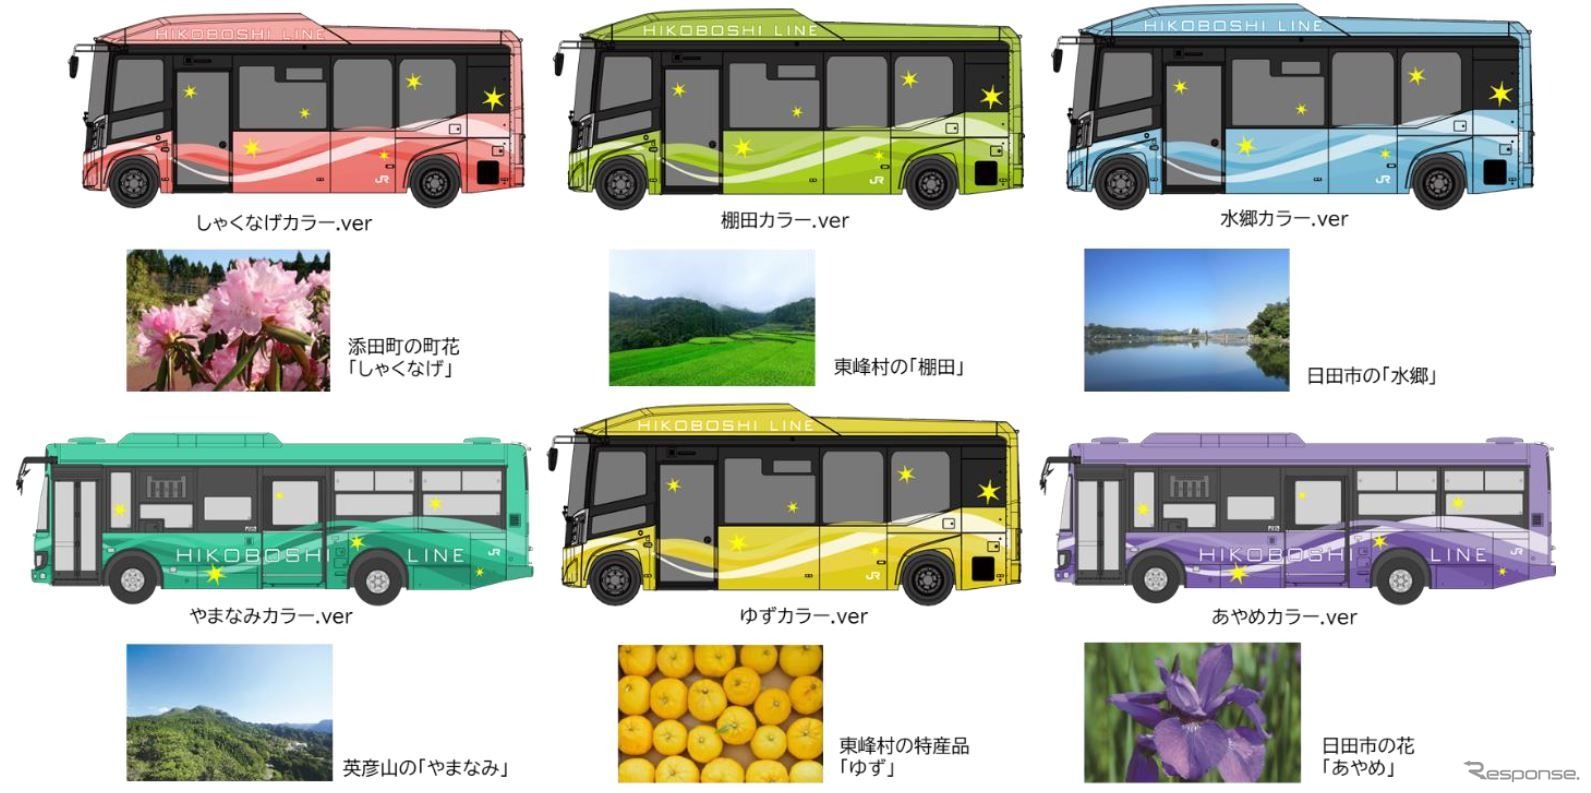 「色とりどりにきらめく地域の魅力」を6色で表現する日田彦山線BRT車両のエクステリア。走行試験が行なわれる小型電気バスは「しゃくなげカラー」「棚田カラー」「水郷カラー」「ゆずカラー」の4両。